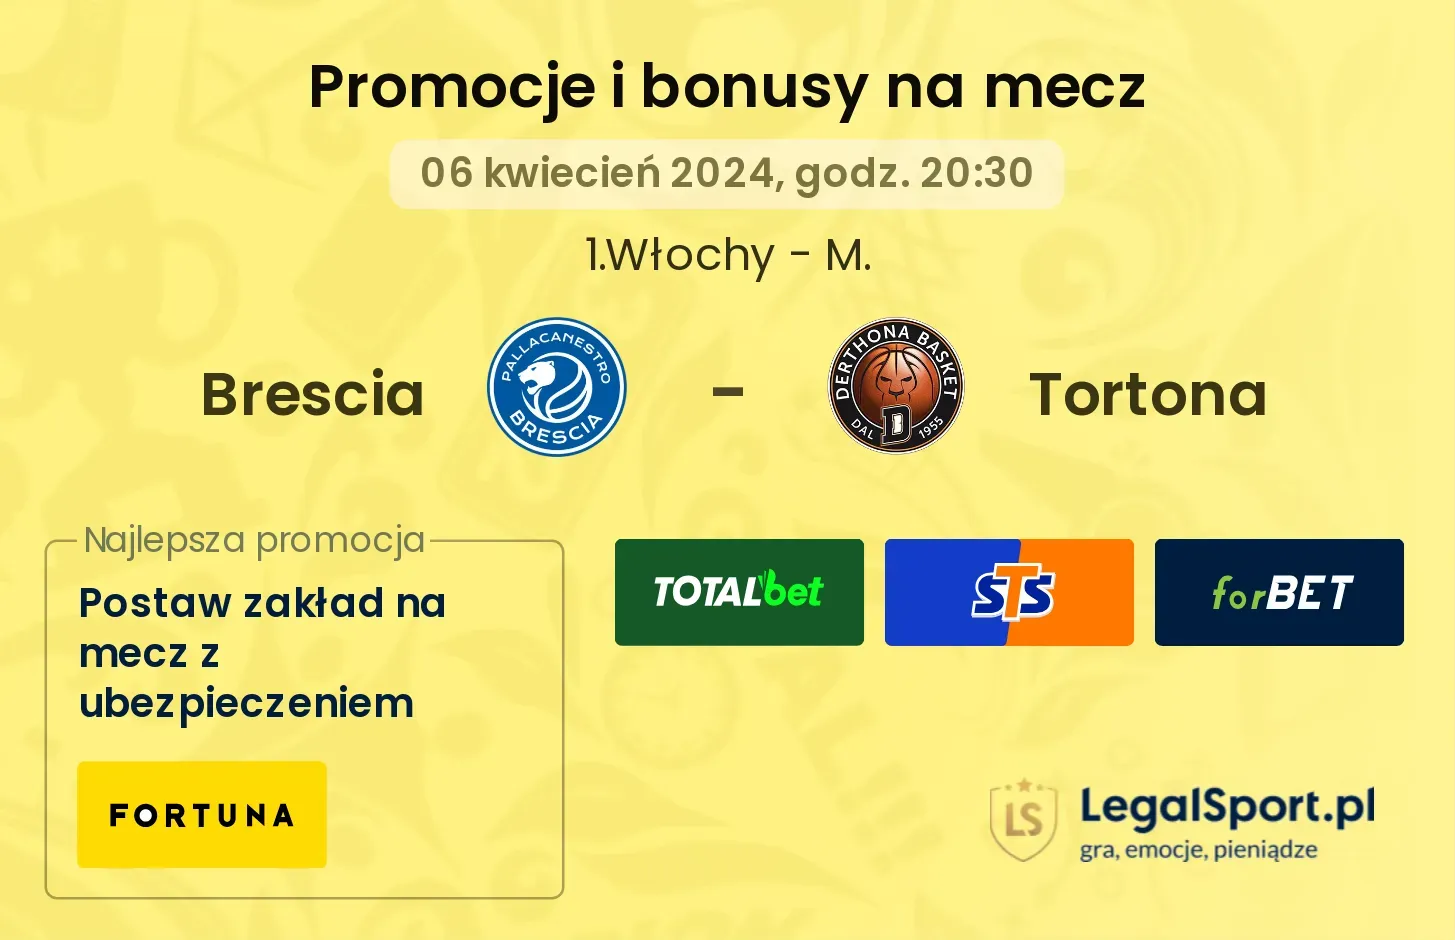 Brescia - Tortona bonusy i promocje (06.04, 20:30)